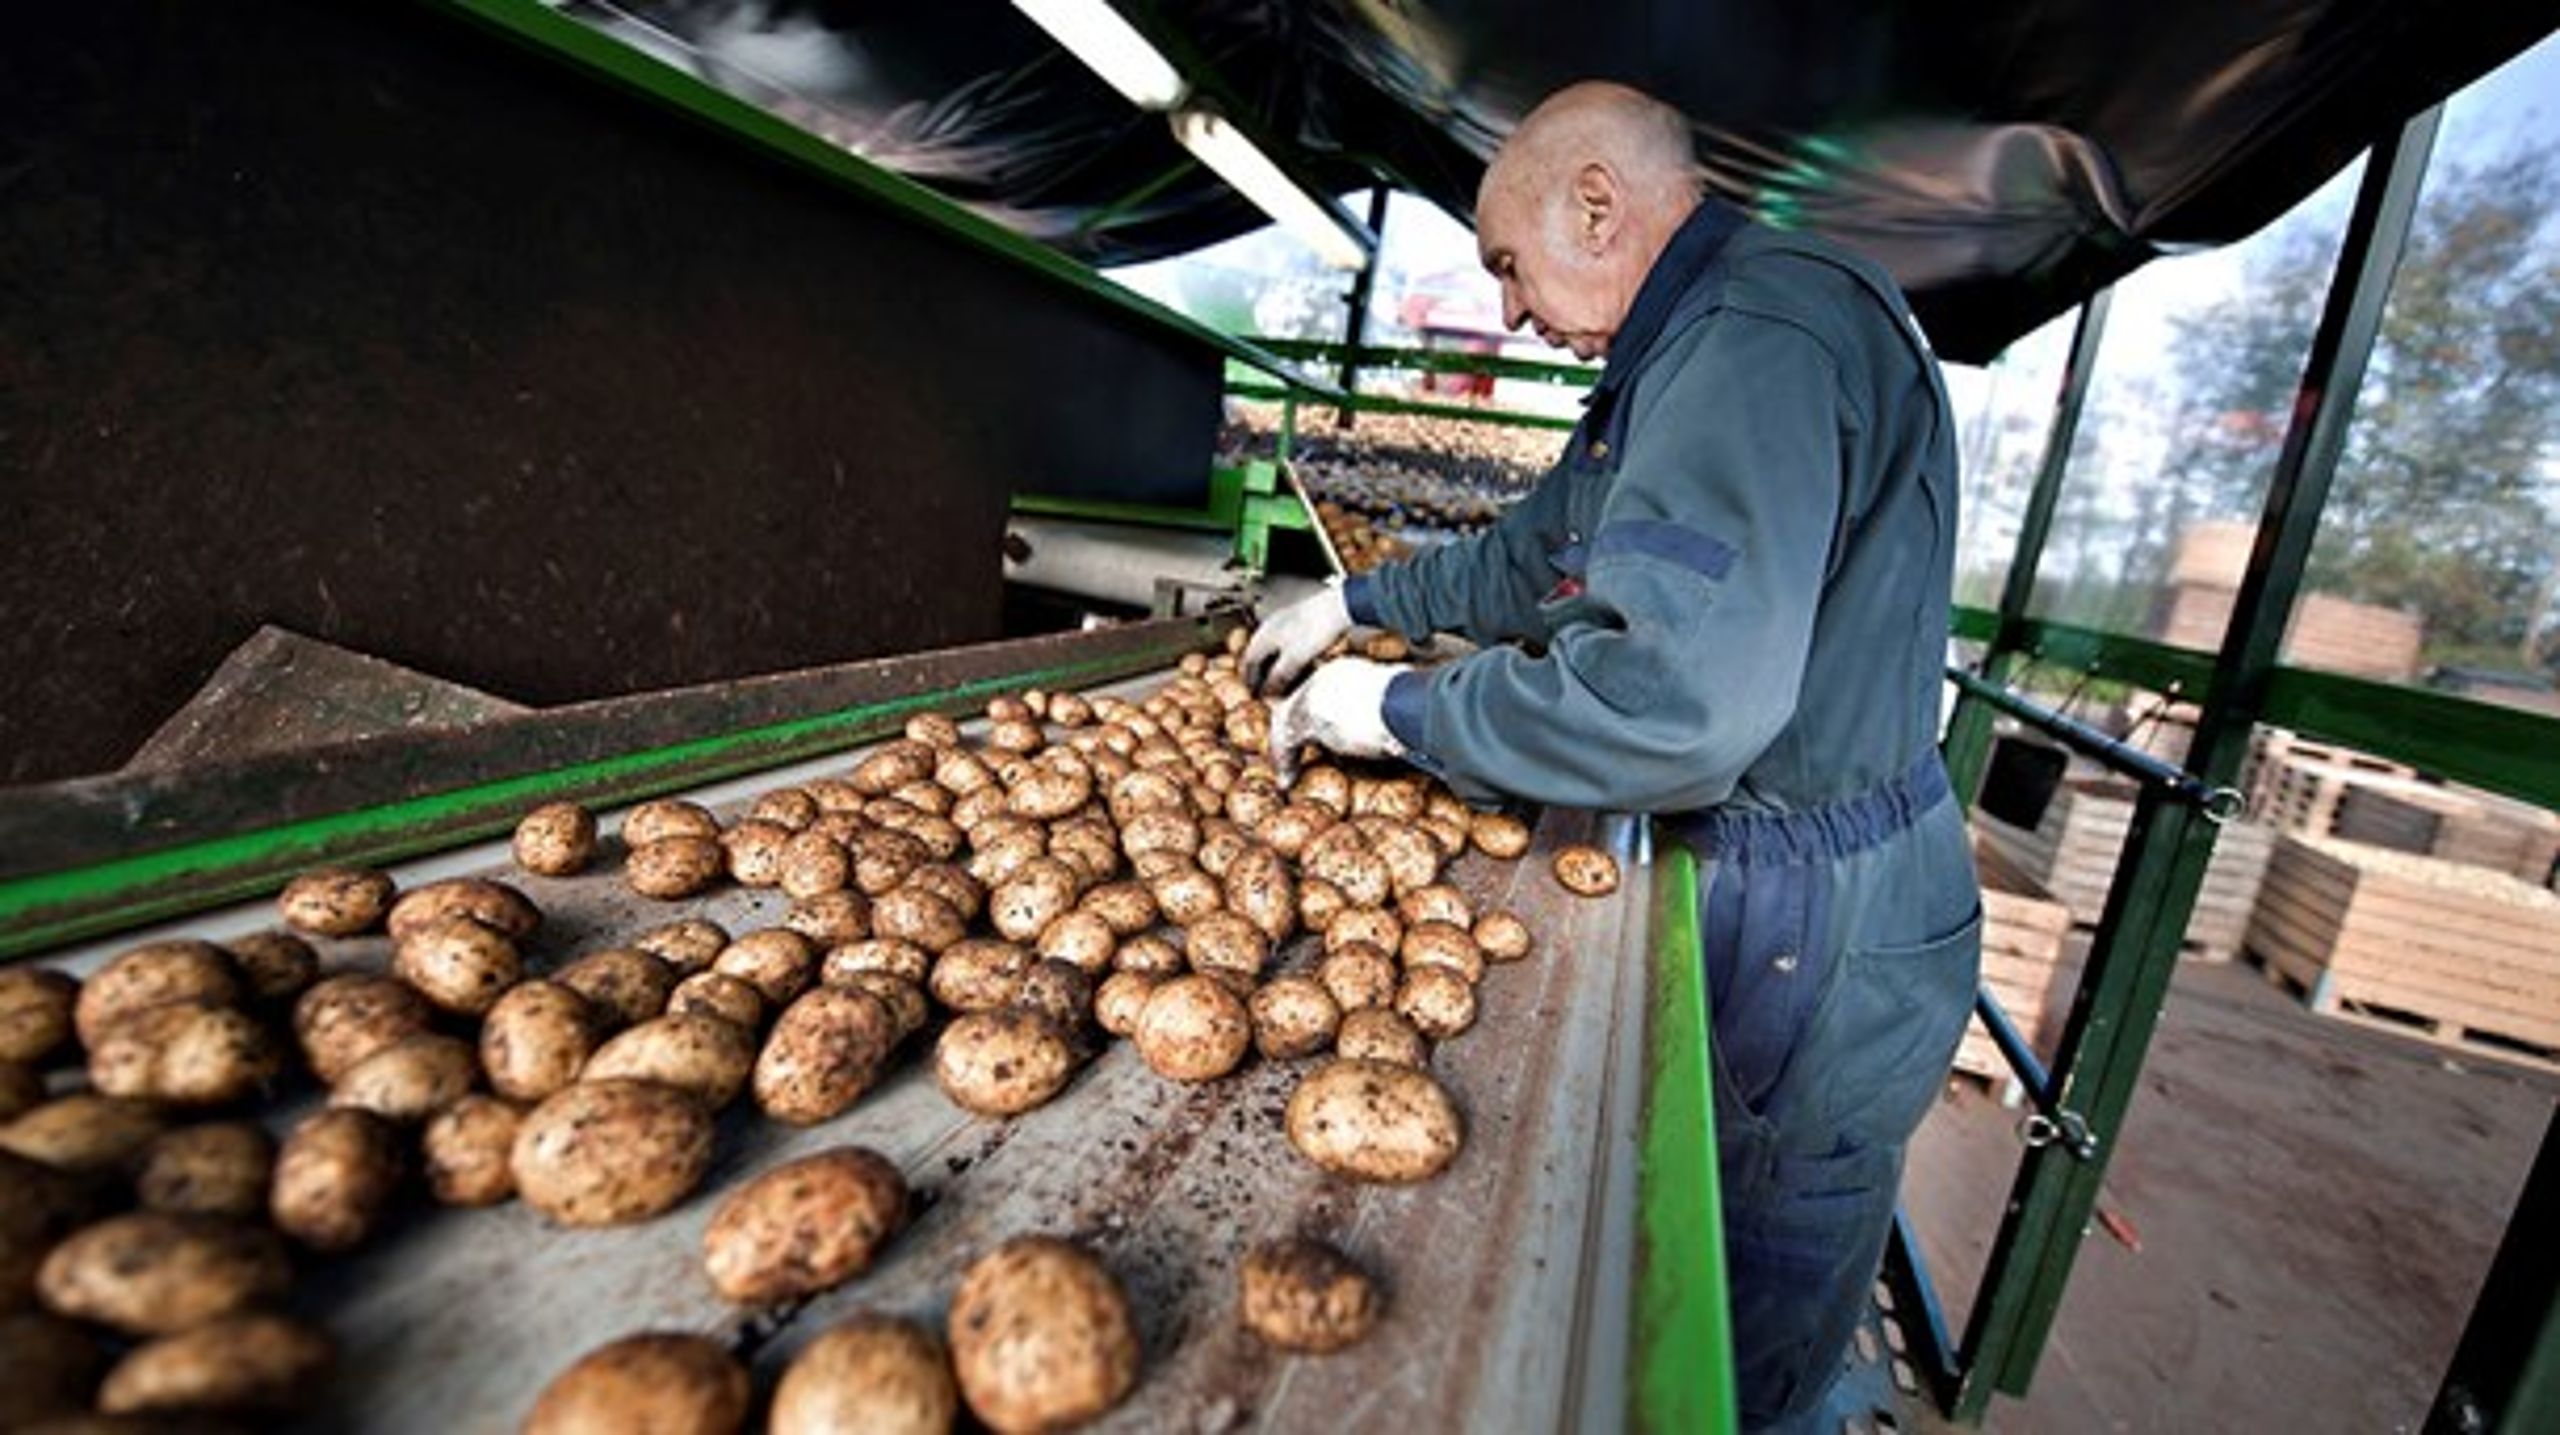 Reststrømme fra de kartofler, vi laver kartoffelmel af, kan bruges til&nbsp;produktion af biobaseret plastik.